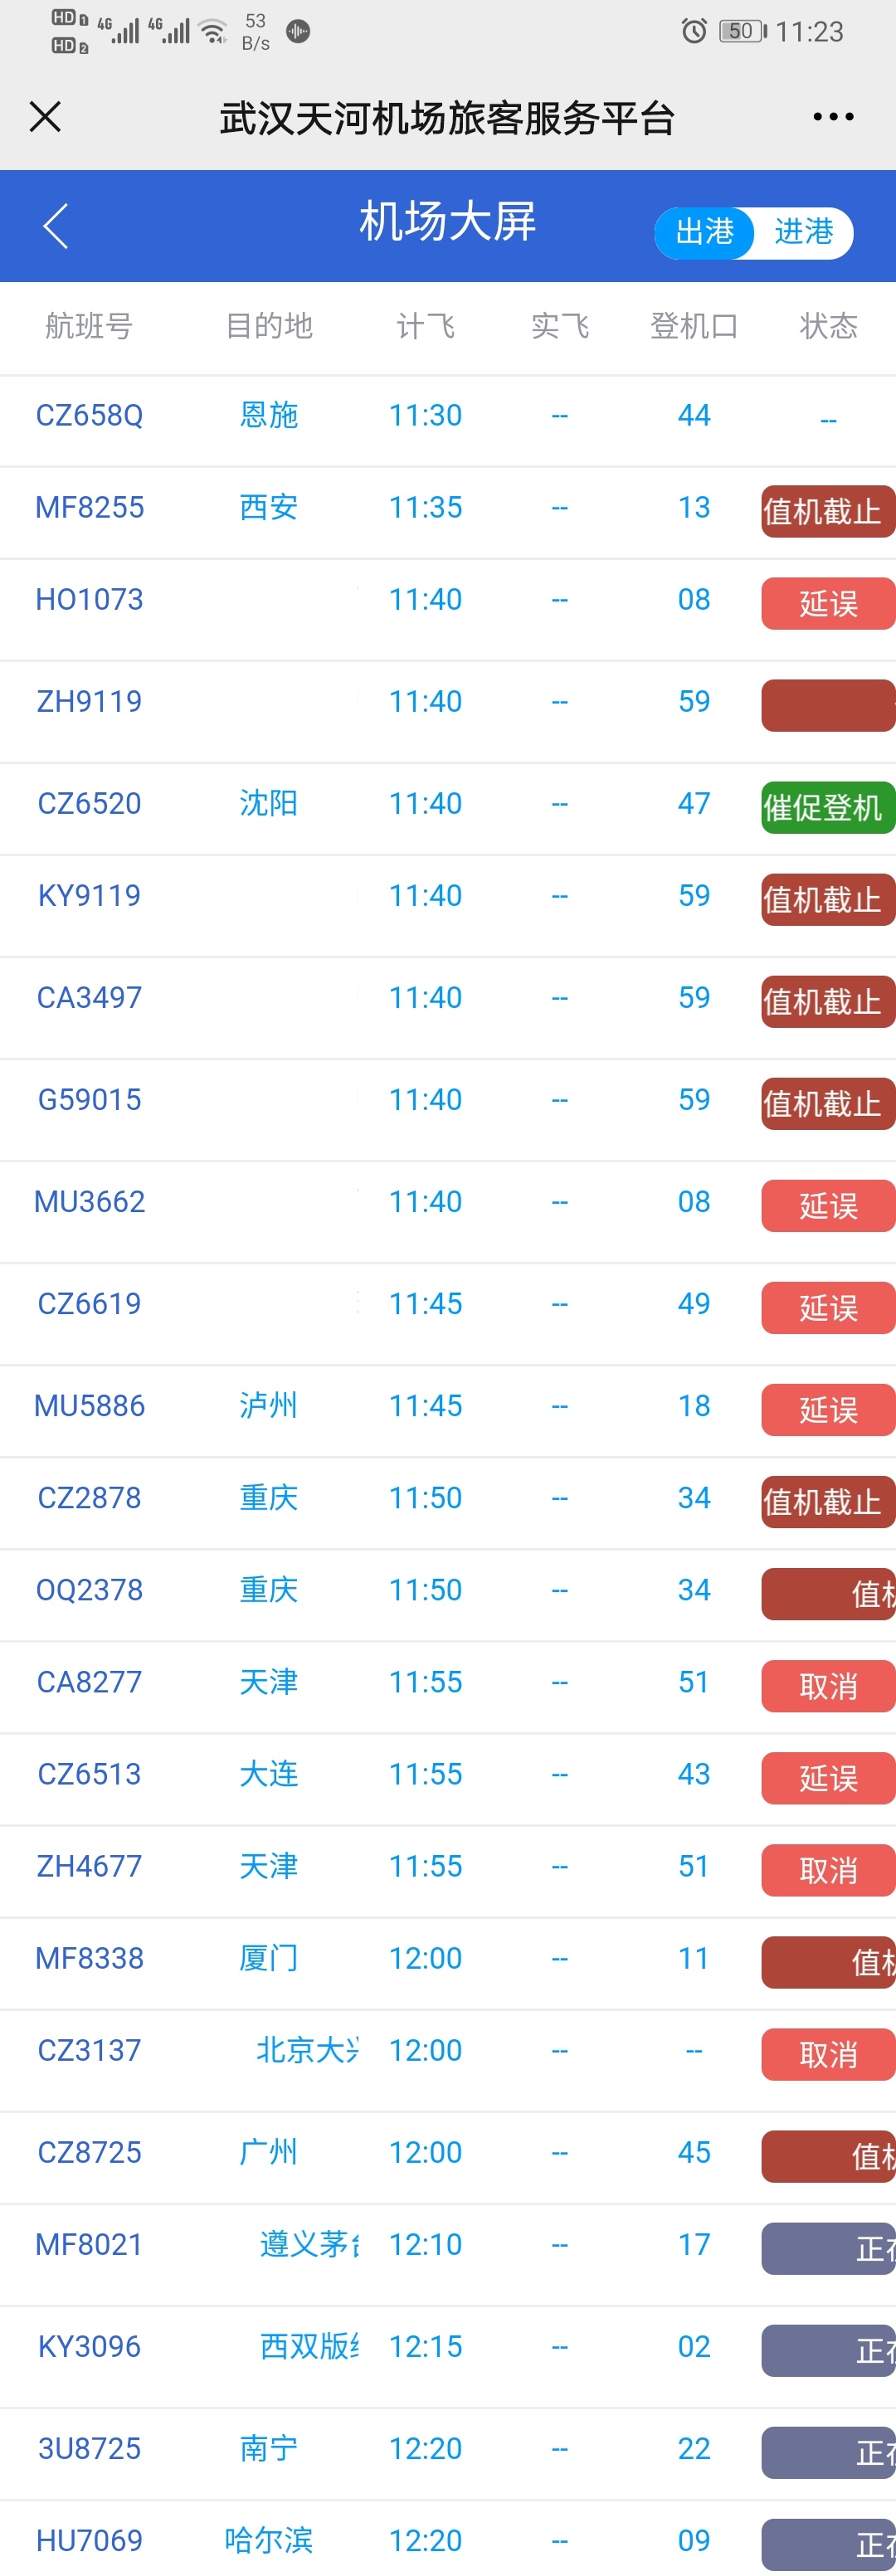 武汉突发龙卷风已致6死218伤 雷暴天气致航班大面积延误或取消